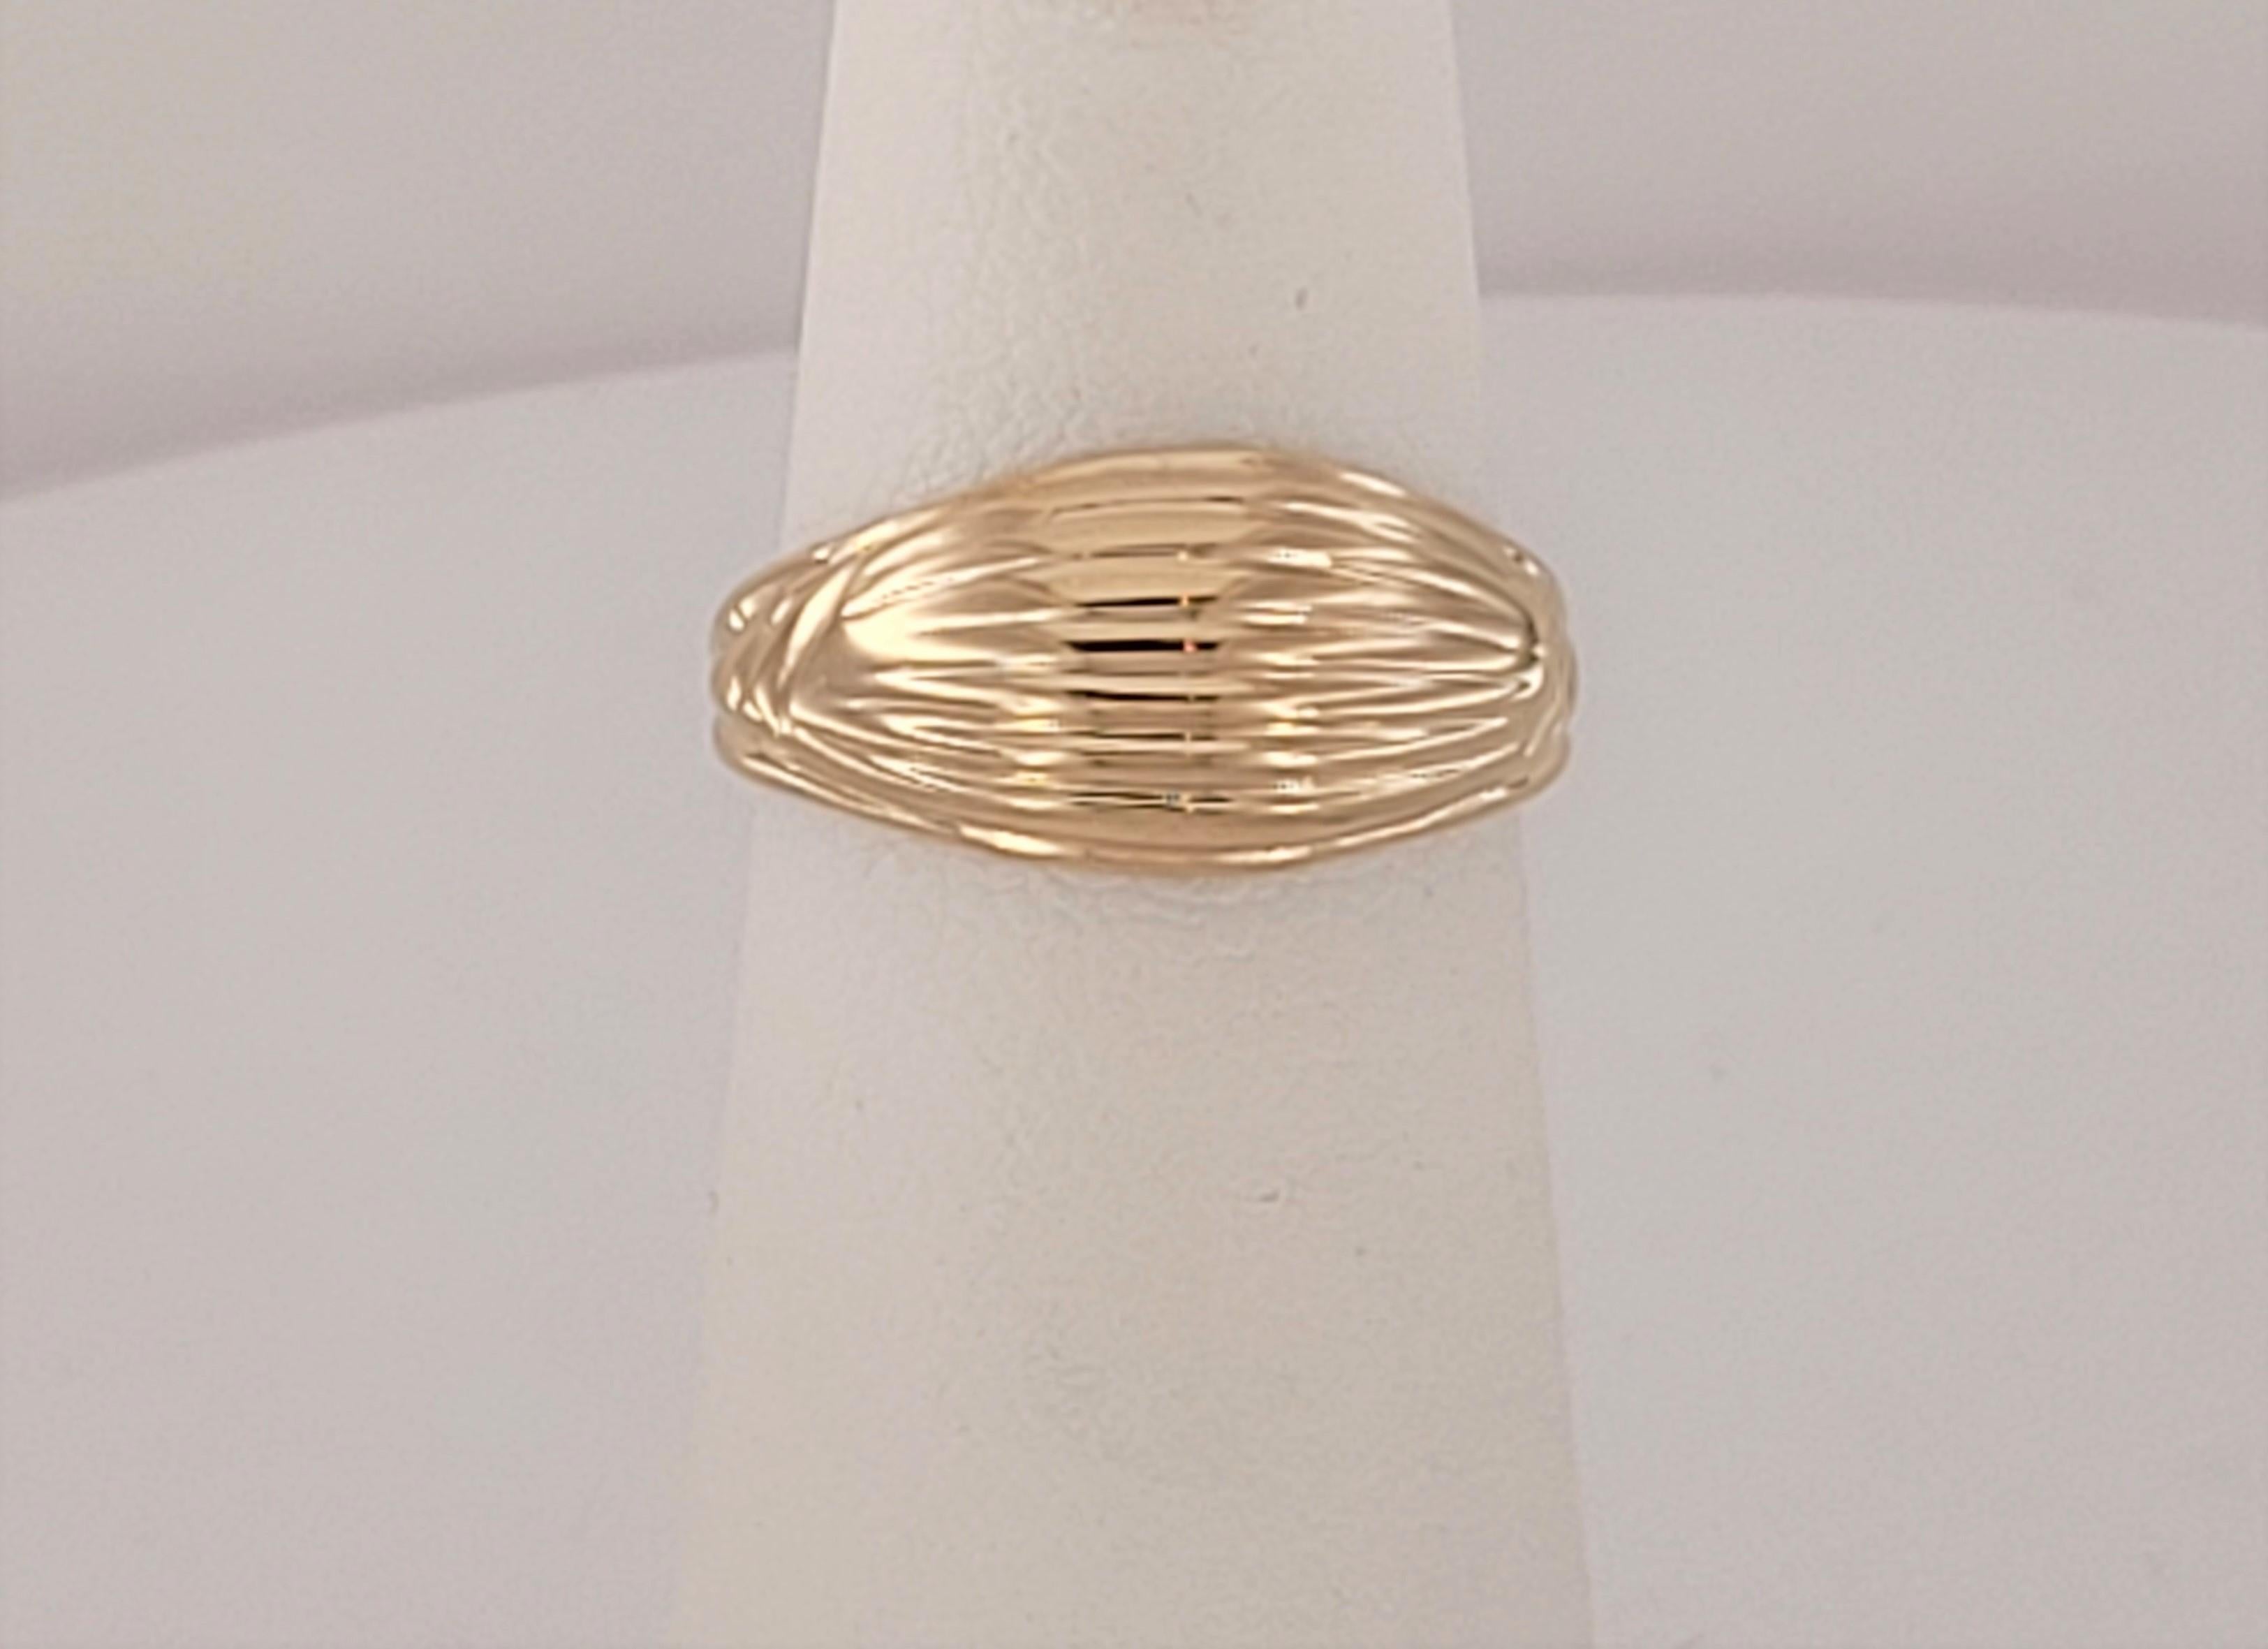 Marke  Tiffany & Co.
14K Gelbgold
Ring Größe 3.5
Ringfarbe Gelb
Ring Typ Vintage By 
Ring Gewicht 3gr
Der Ring ist zwischen 40 und 50 Jahre alt.